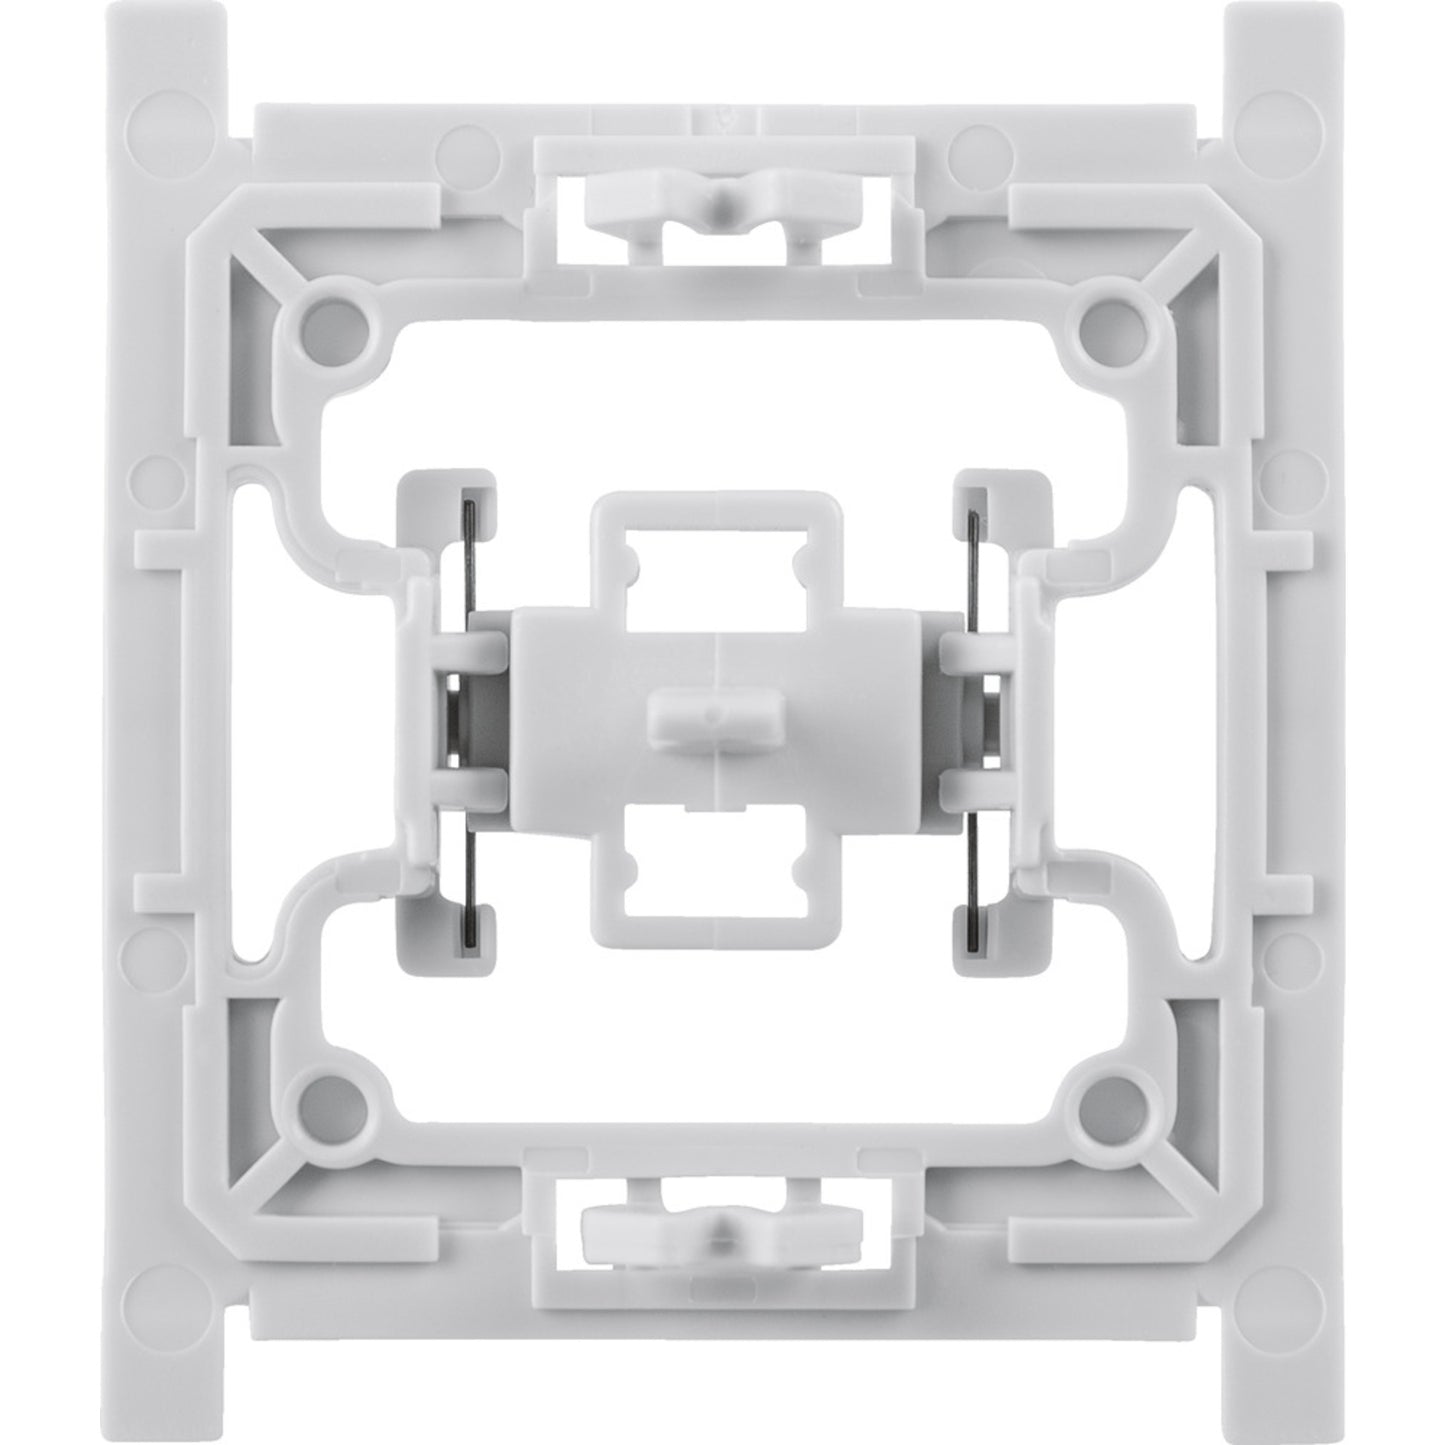 Installationsadapter für Siemens-Schalter, 1er-Set für Smart Home / Hausautomation